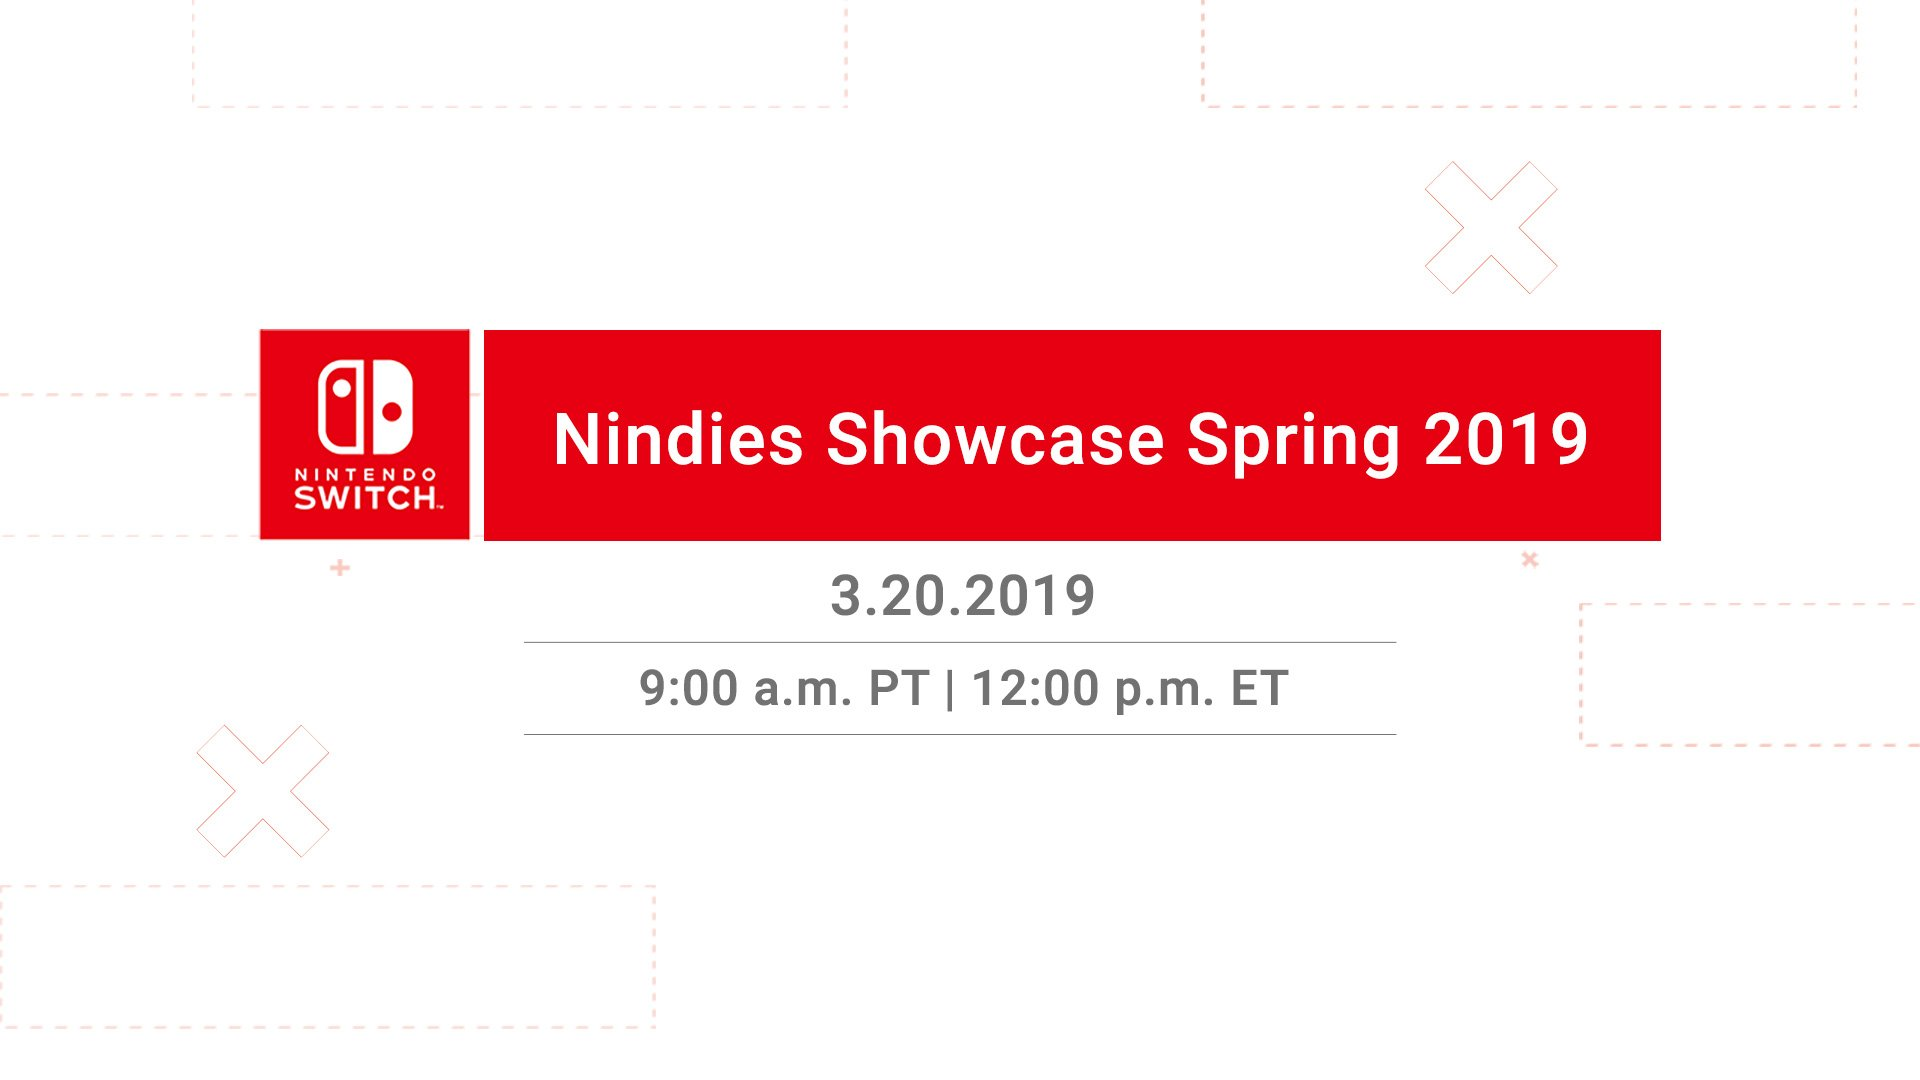 Nindies Showcase Spring 2019